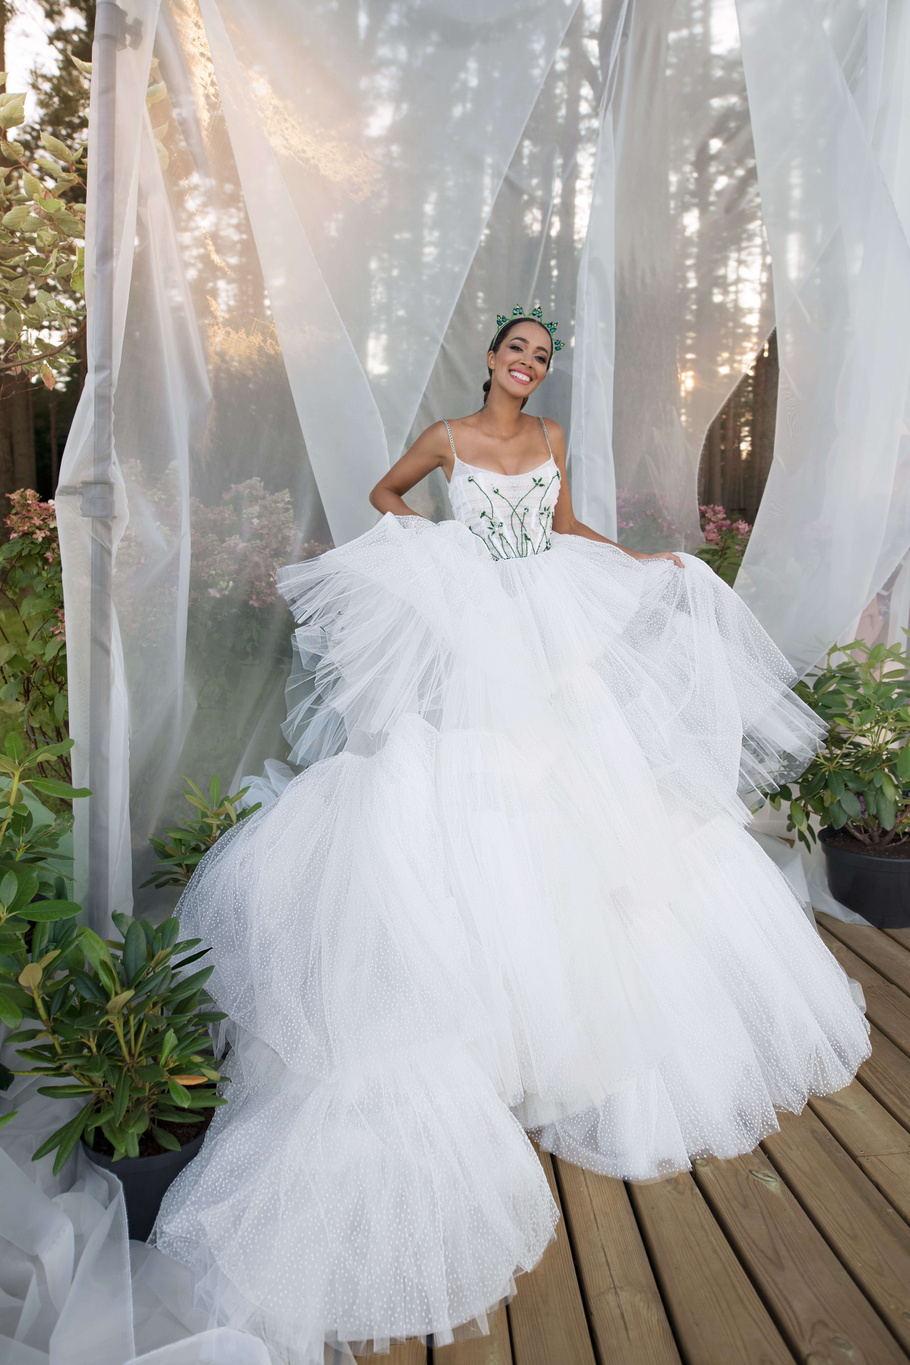 Купить свадебное платье «Бернар» Бламмо Биамо из коллекции Нимфа 2020 года в Нижнем Новгороде